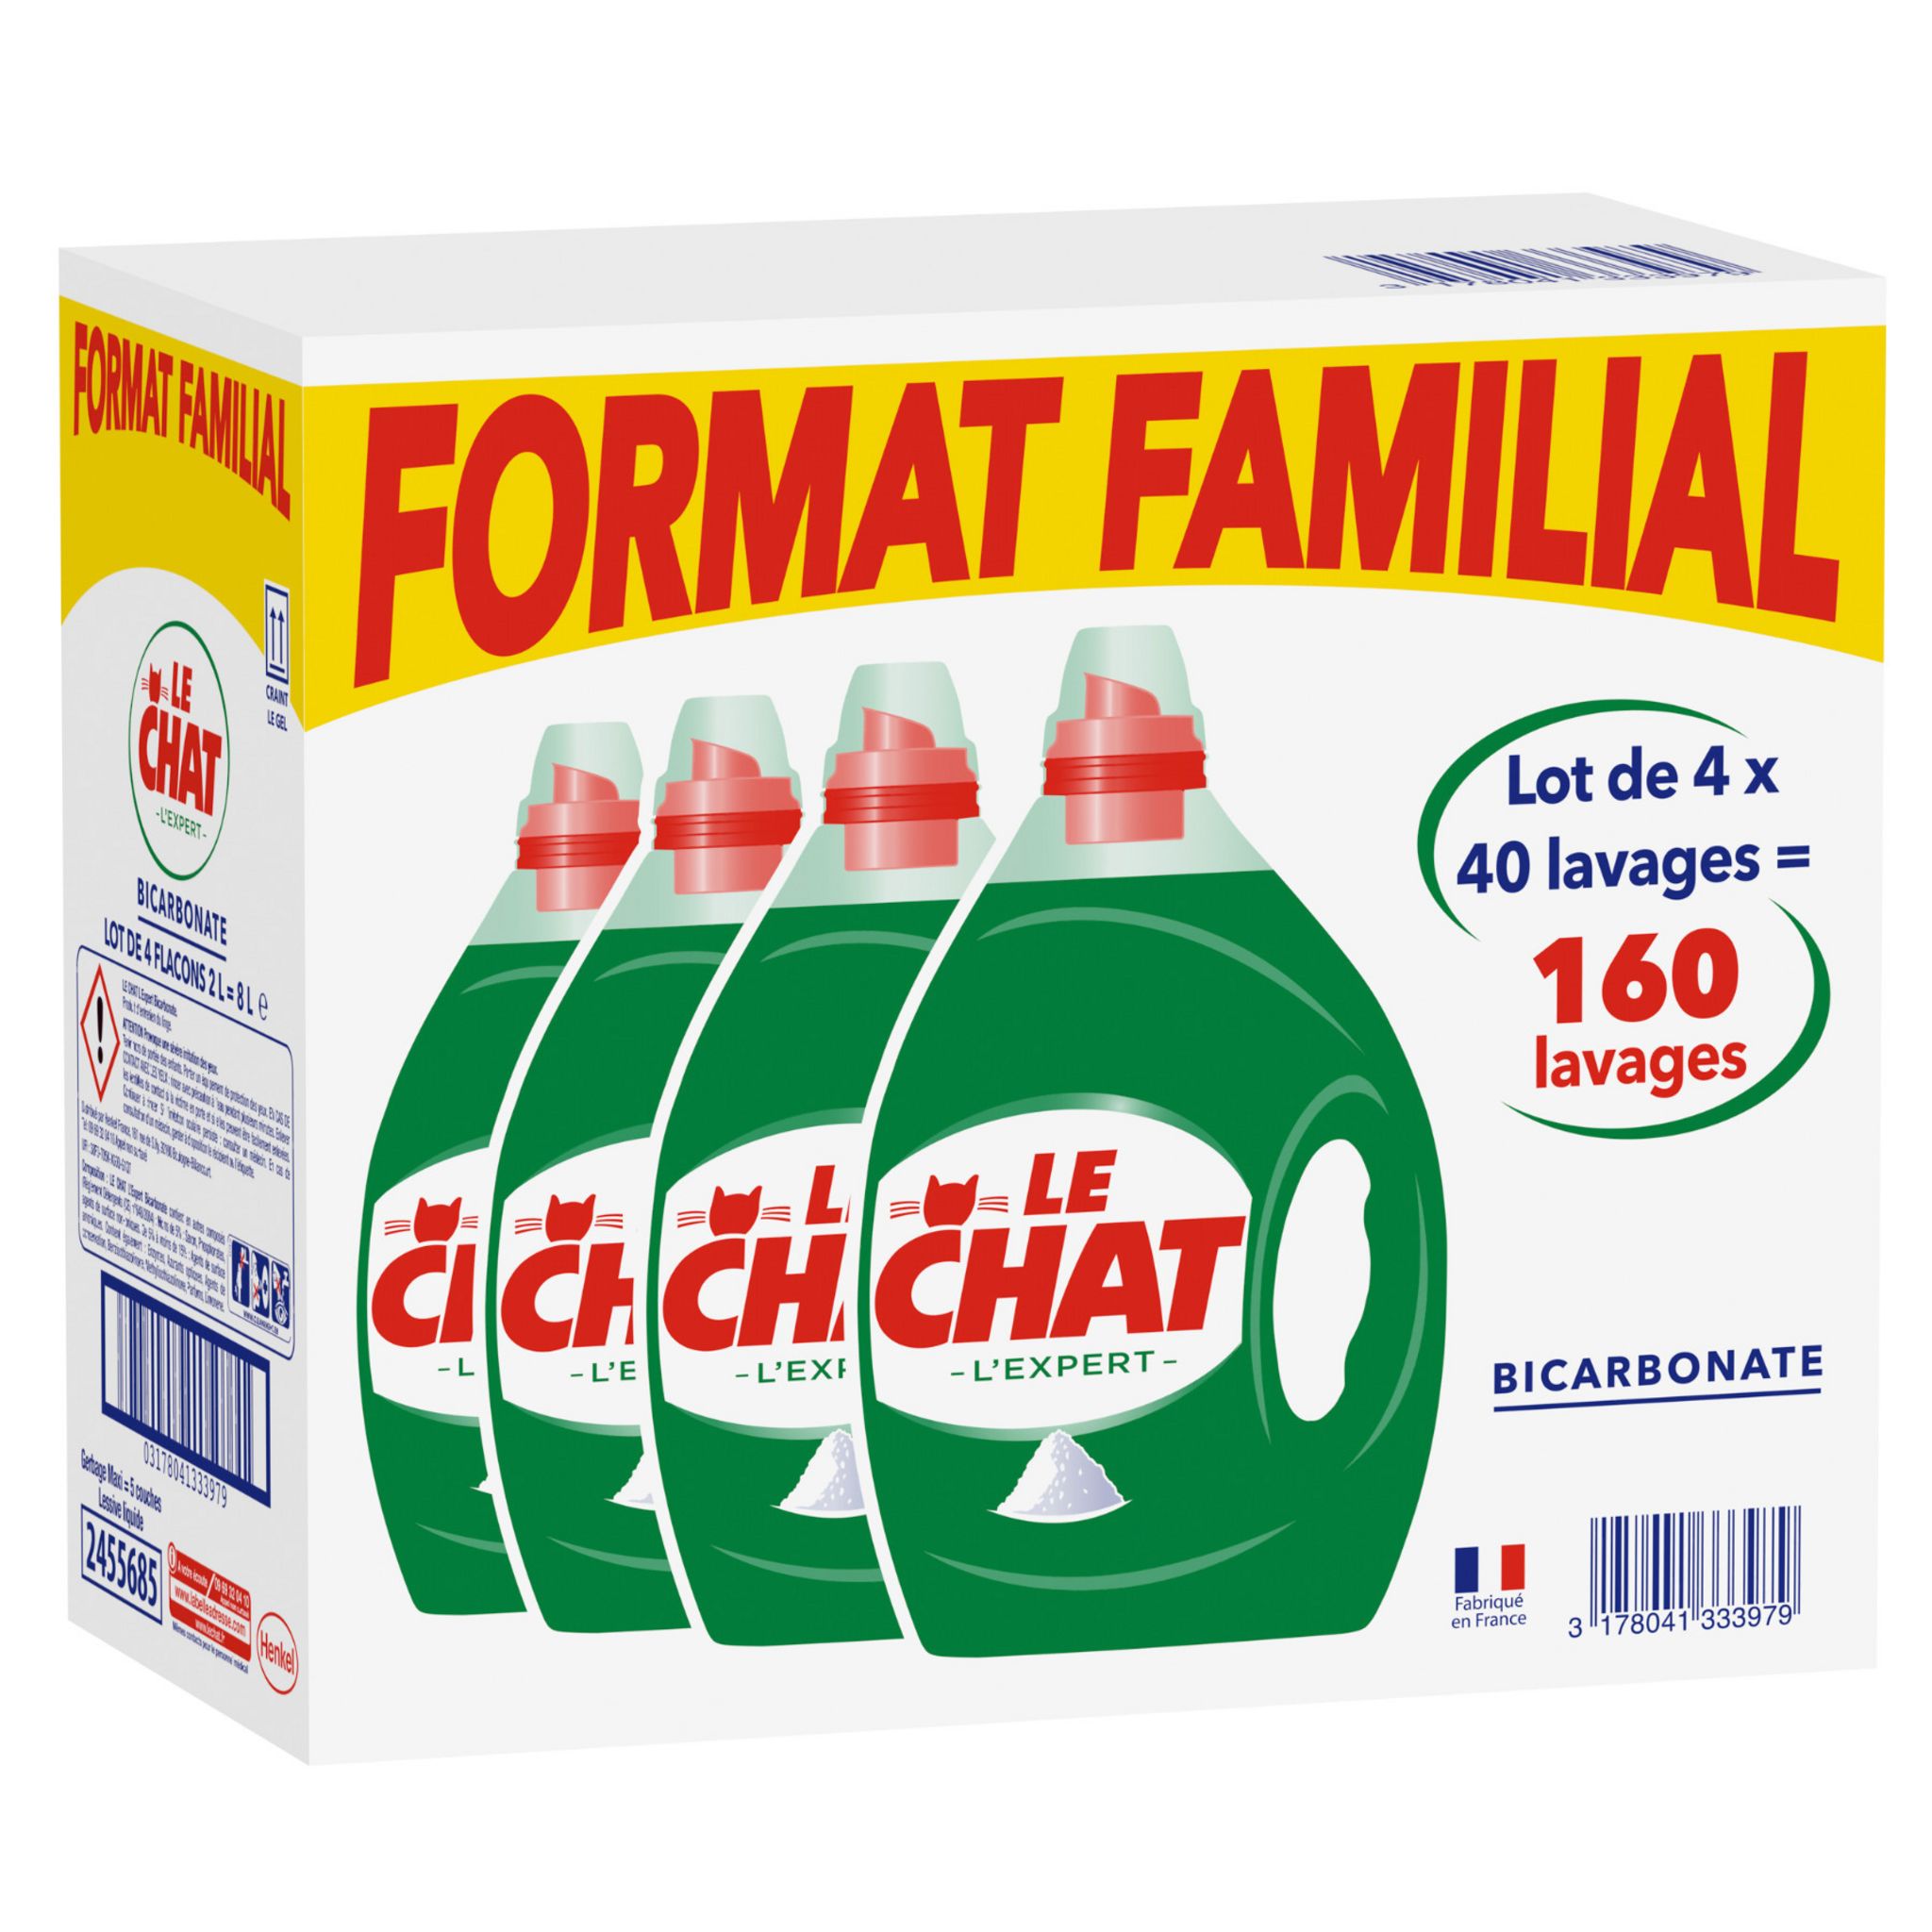 LE CHAT Lessive liquide au bicarbonate format familial 160 lavages